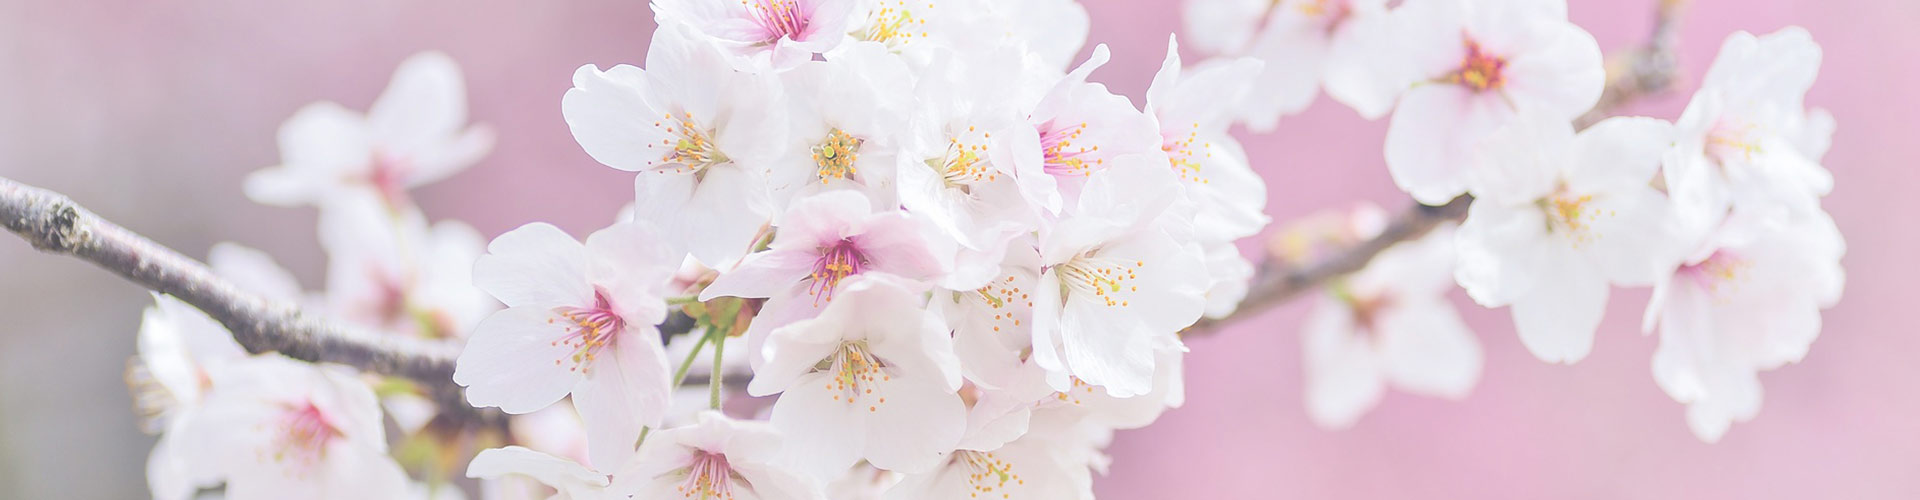 Headerbild Zahnerhaltung Kirschblüten